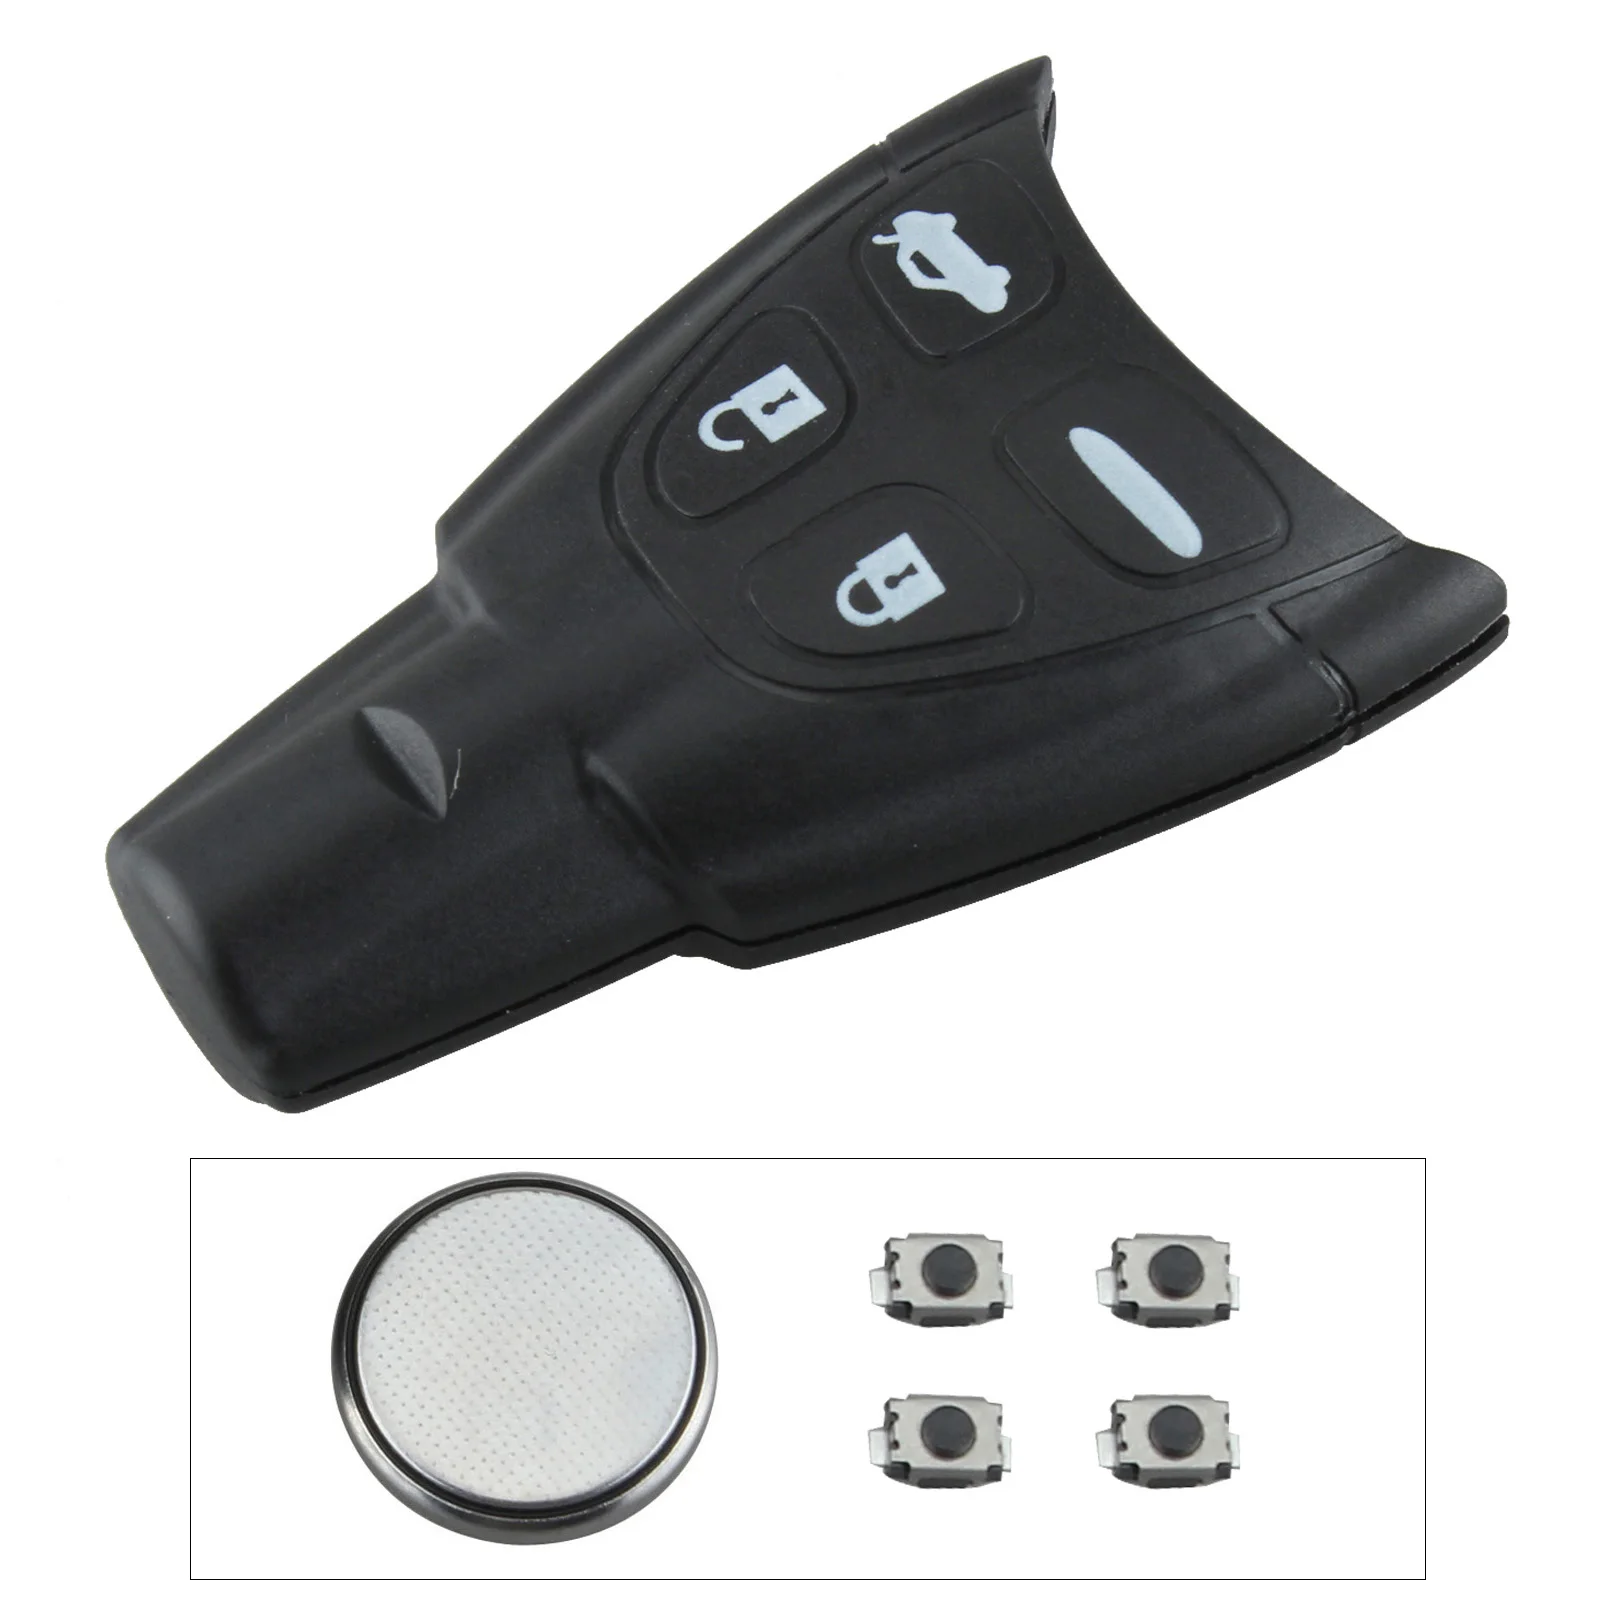 4 Button Car Remote Key Fob Transmitter Clicker Alarm Keyless Entry Transmitter Automobile Car Key for SAAB 93 95 9-3 9-5 WF 4